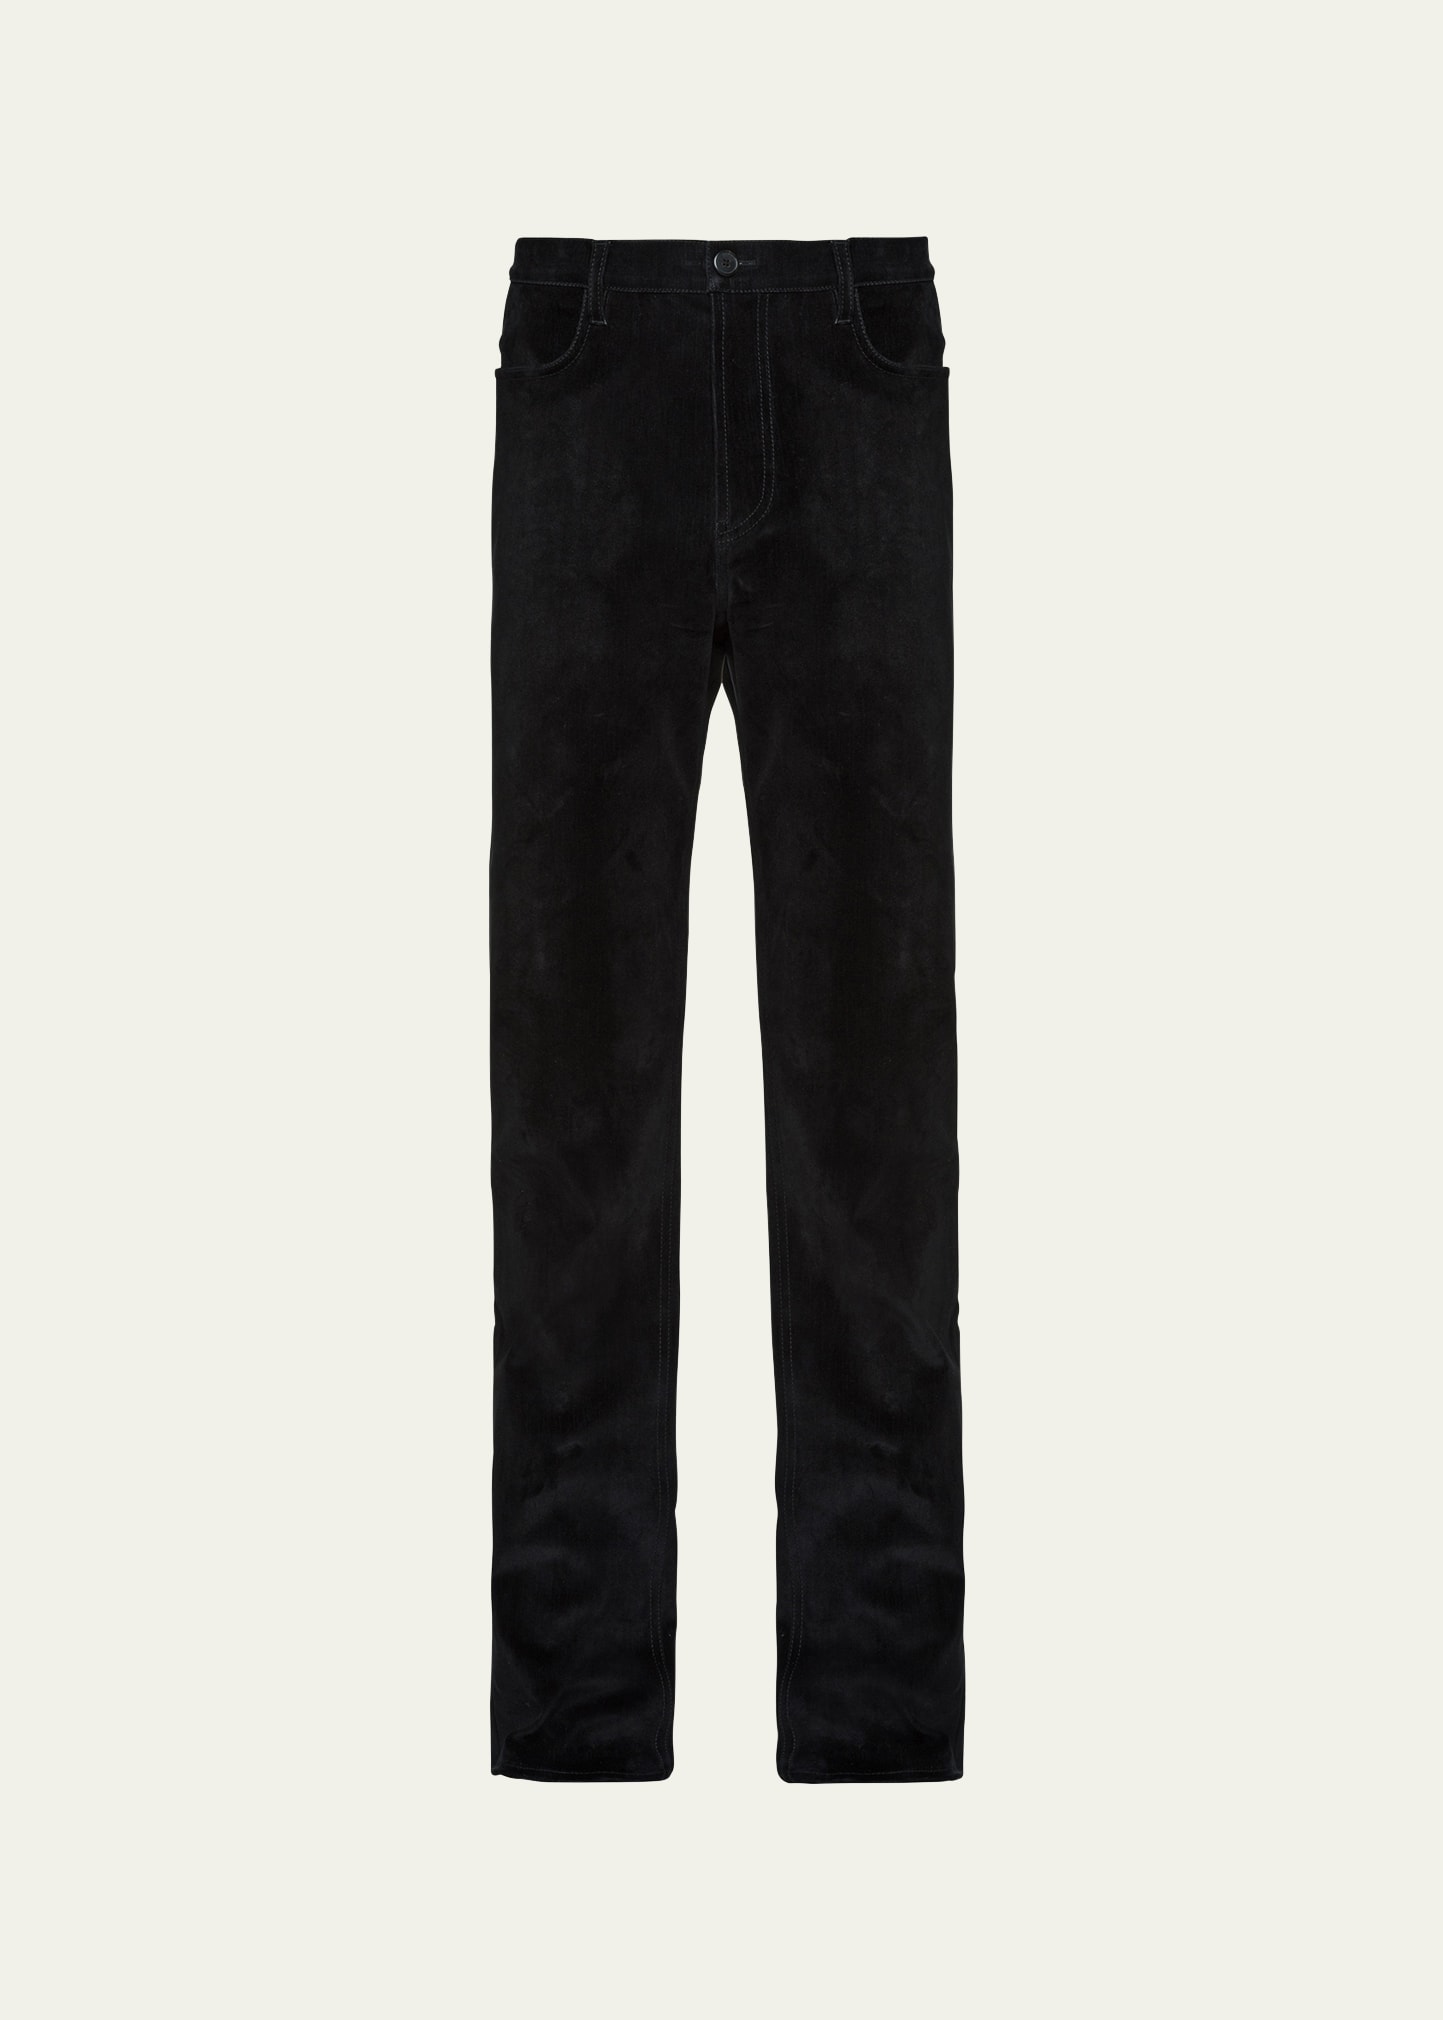 Men's 5-Pocket Straight-Leg Jeans